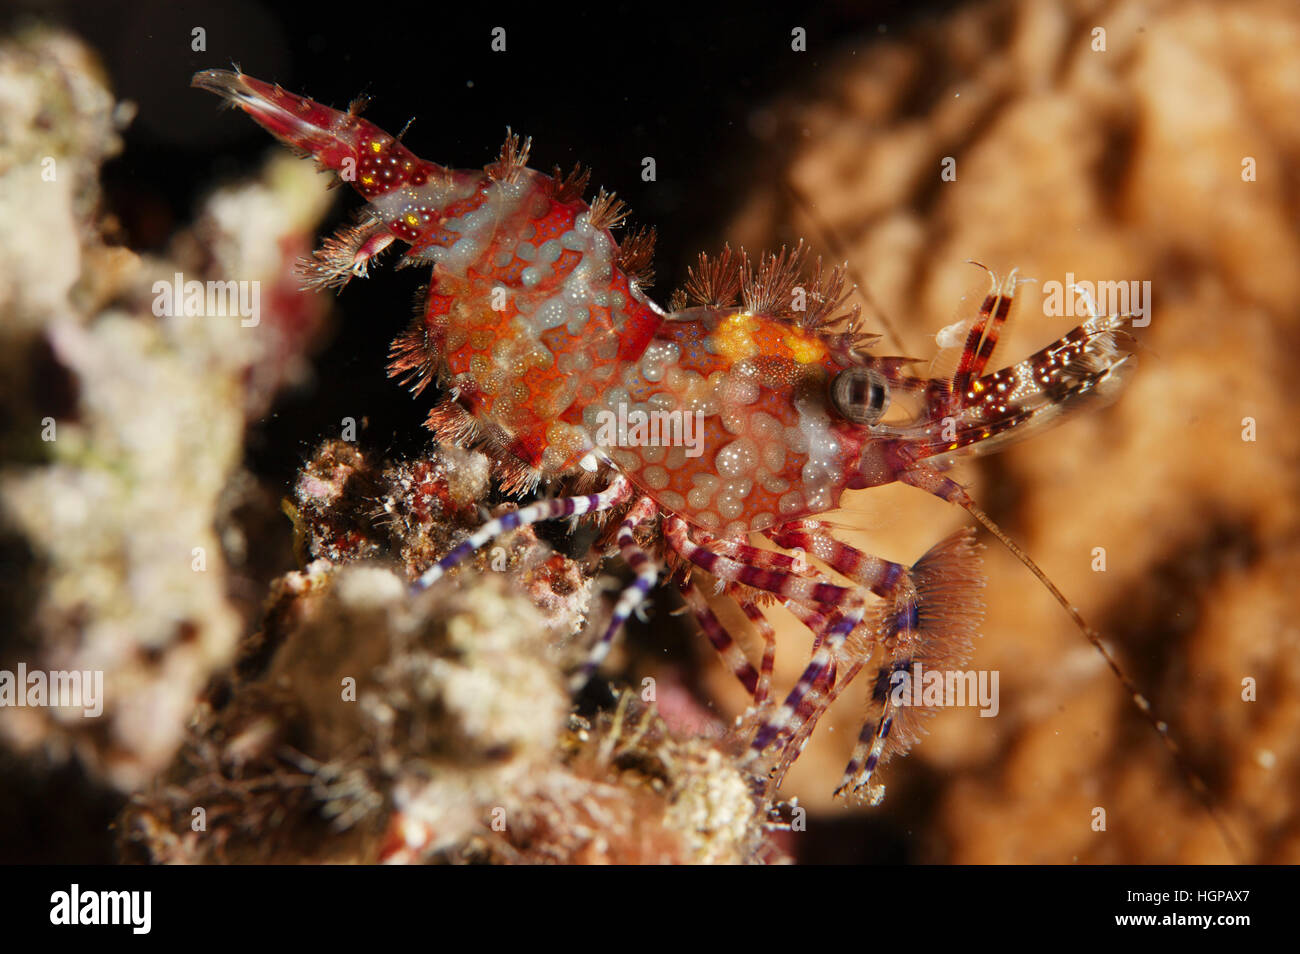 Eine Makro Nahaufnahme Schuss des Roten Meeres Marmor Garnelen Saron Marmoratus sitzt auf der Koralle genannt. Stockfoto